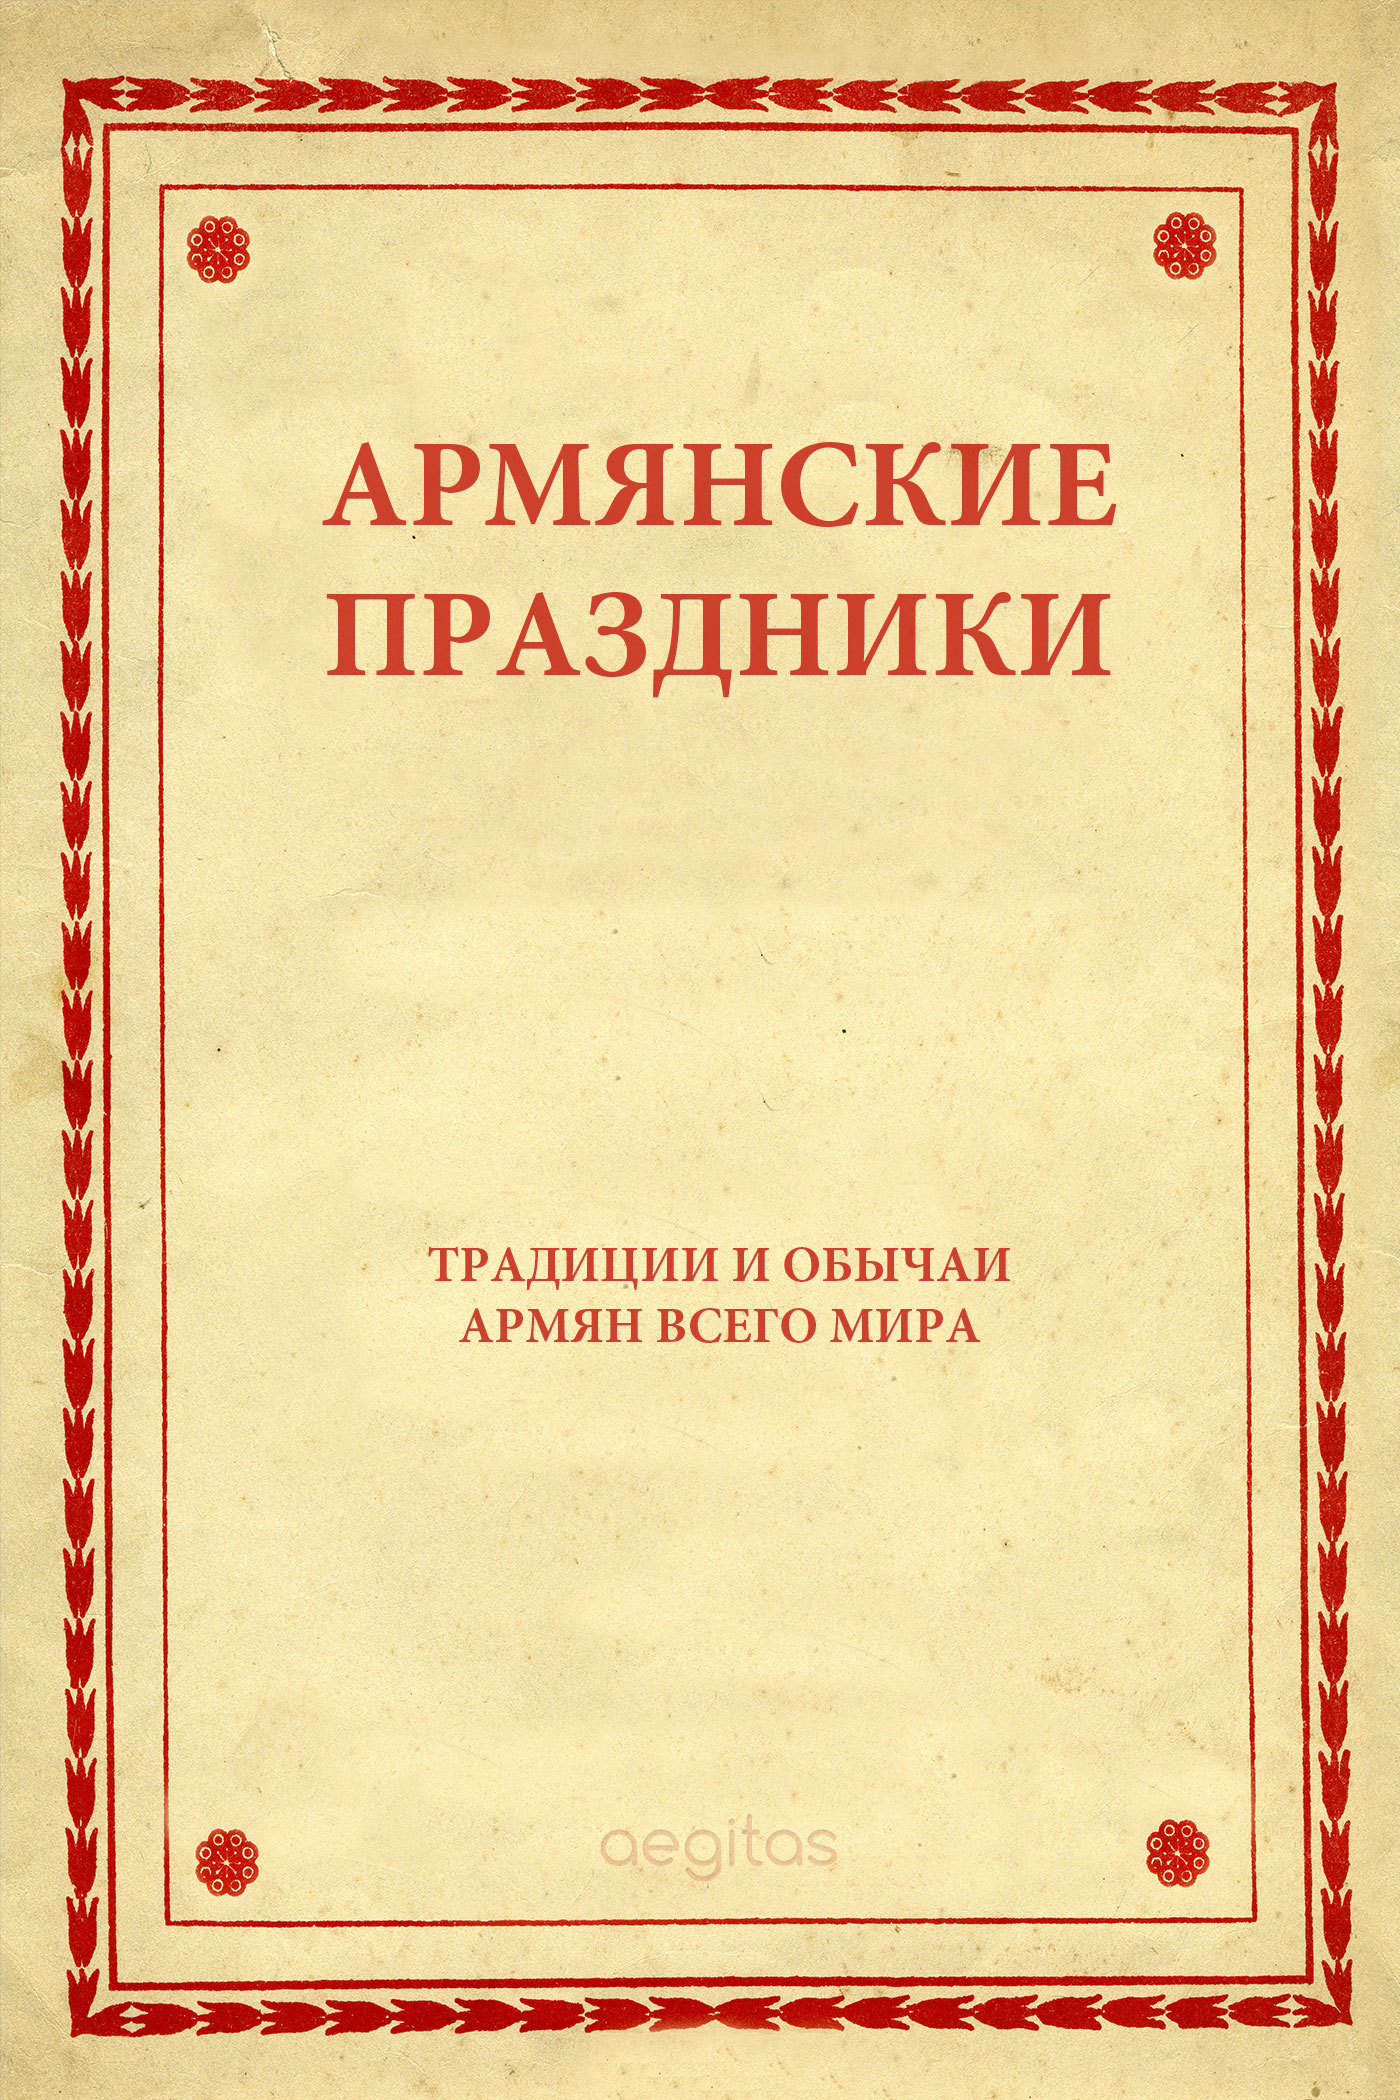 Книга Армянские праздники из серии , созданная  Народное творчество (Фольклор), может относится к жанру История, Культурология. Стоимость книги Армянские праздники  с идентификатором 24430758 составляет 0.90 руб.